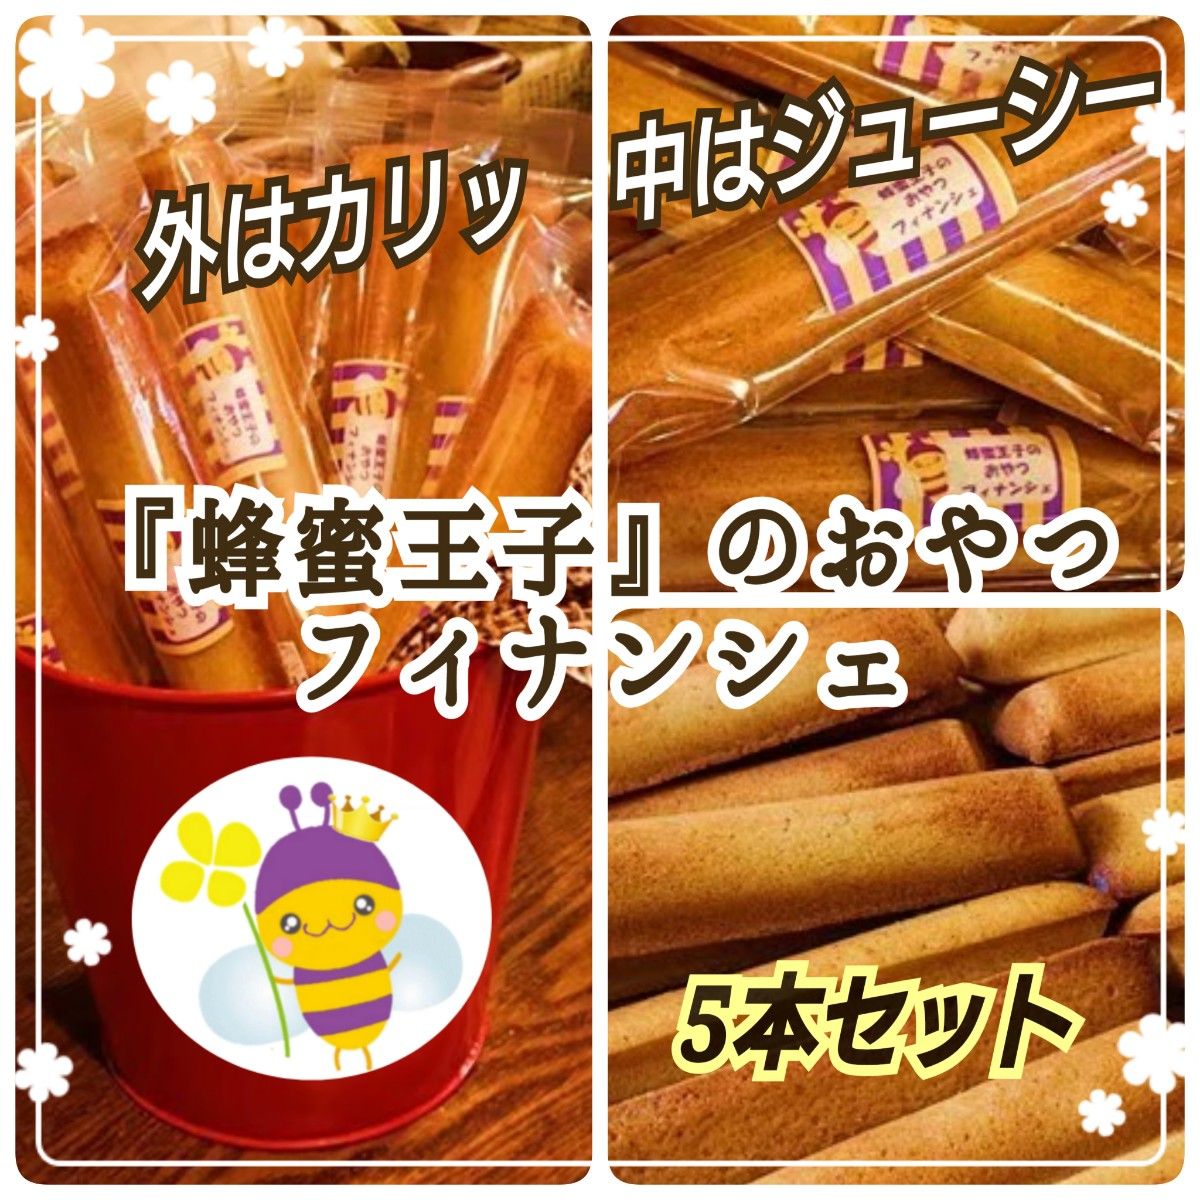 【厳選素材】 お菓子 ギフト 蜂蜜王子の おやつ フィナンシェ 蜂蜜 5本セット 母の日 父の日 プレゼント 焼き菓子 b